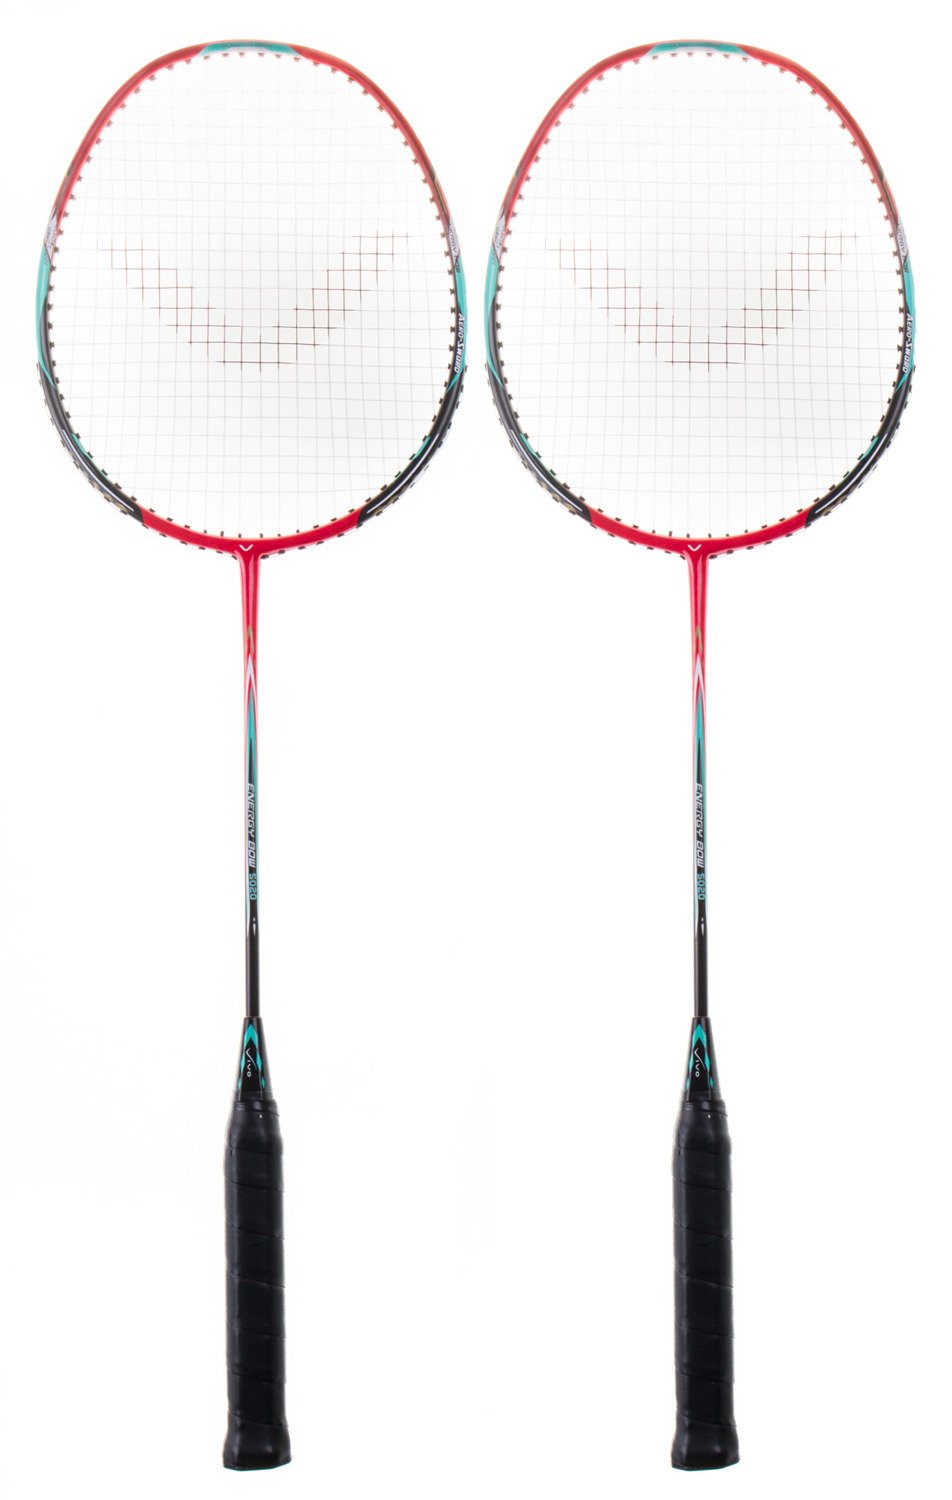 Badminton Vivo zestaw 2-rakietki 5020